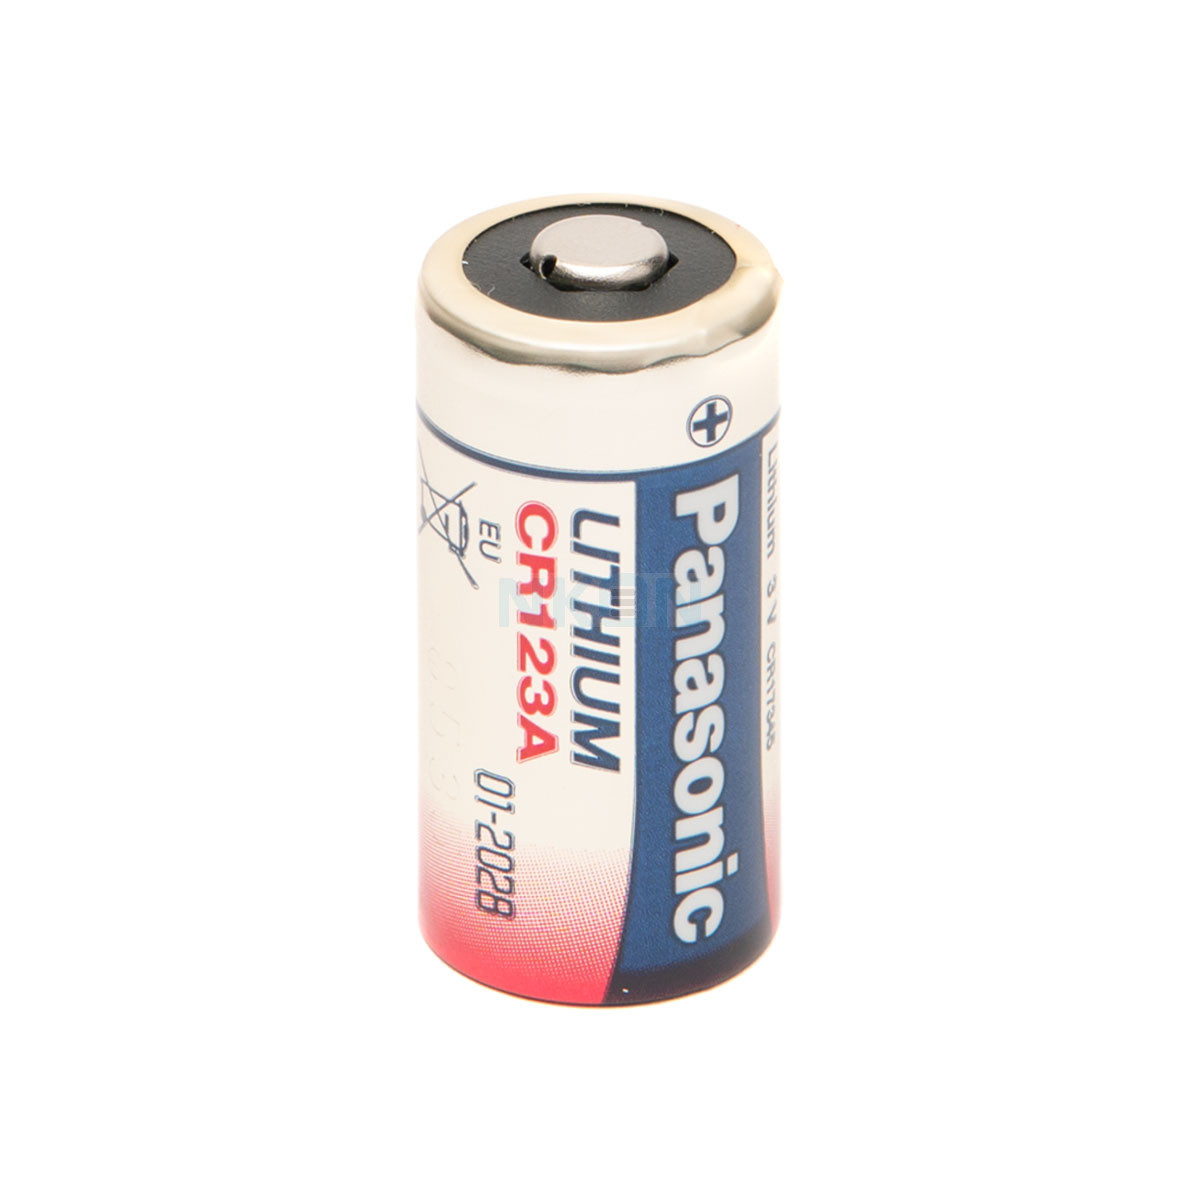 Titanium CR123A 3V Lithium Battery - 2 Pack – HomeSeer